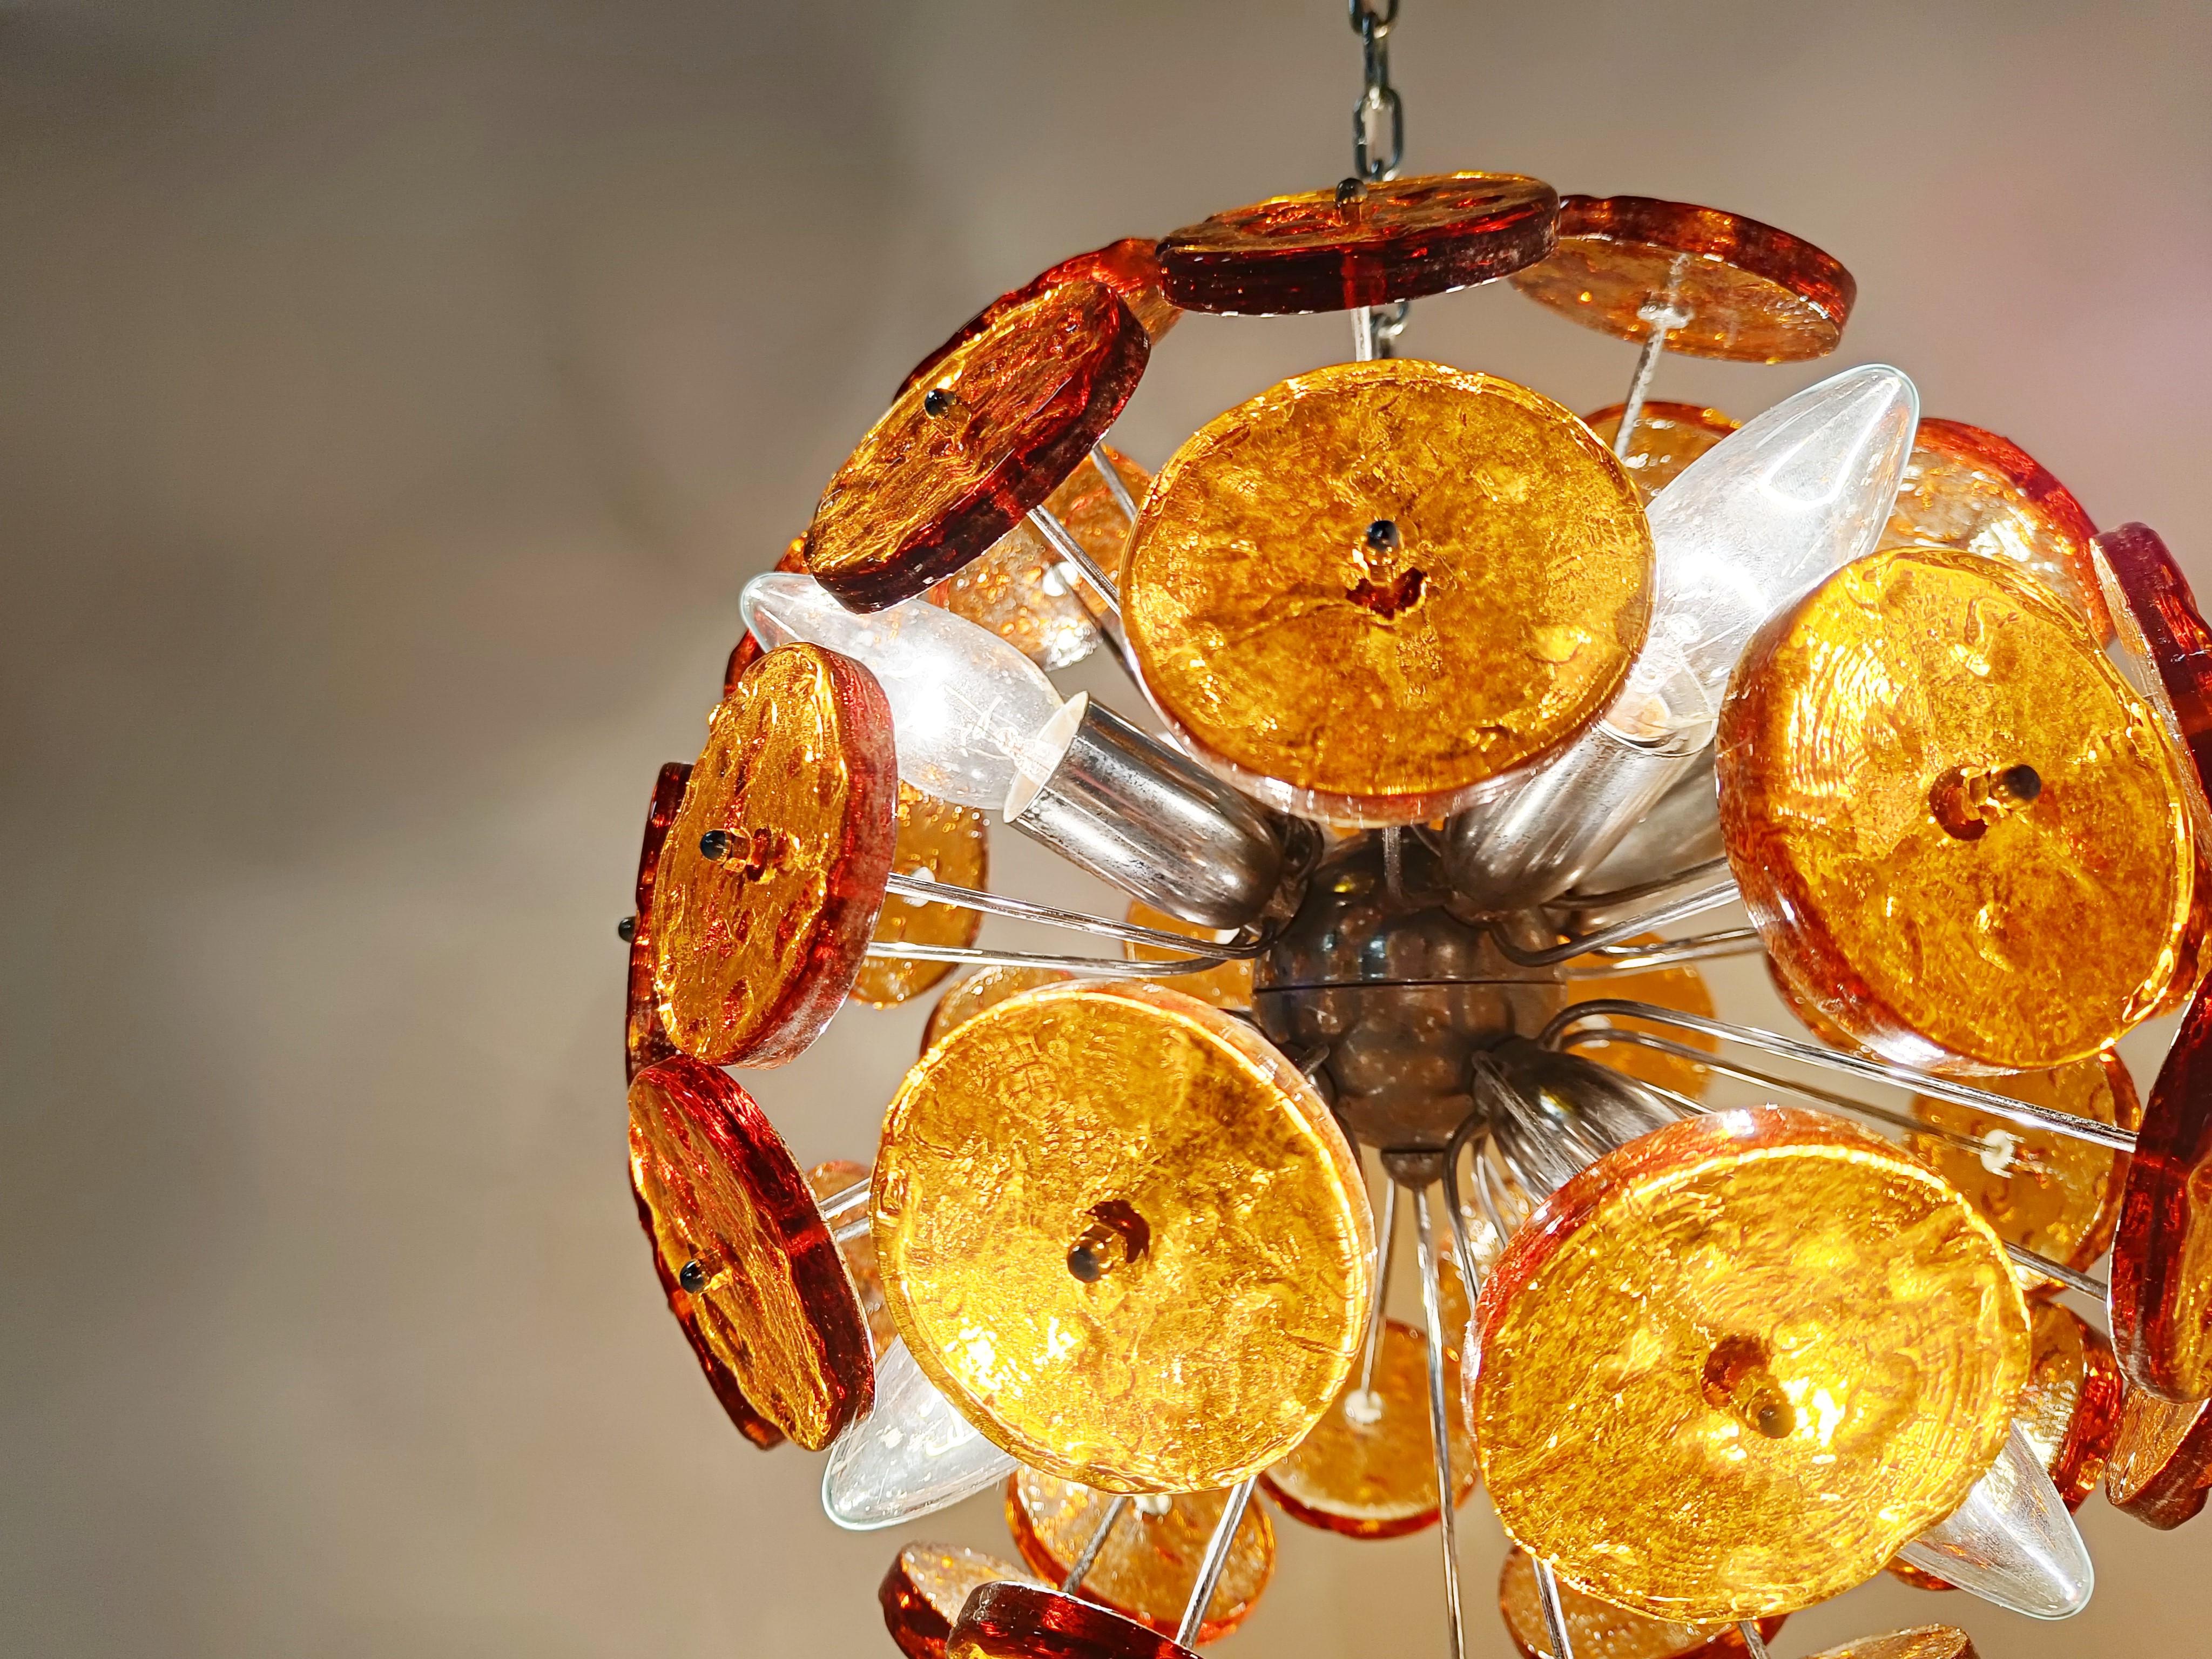 Auffälliger sputnikförmiger Kronleuchter mit braunen/bernsteinfarbenen Murano-Glasscheiben auf einem verchromten Gestell.

Einmal beleuchtet, strahlt dieser schöne Kronleuchter ein warmes, diffuses Licht aus.

Geprüft und einsatzbereit.

Wir